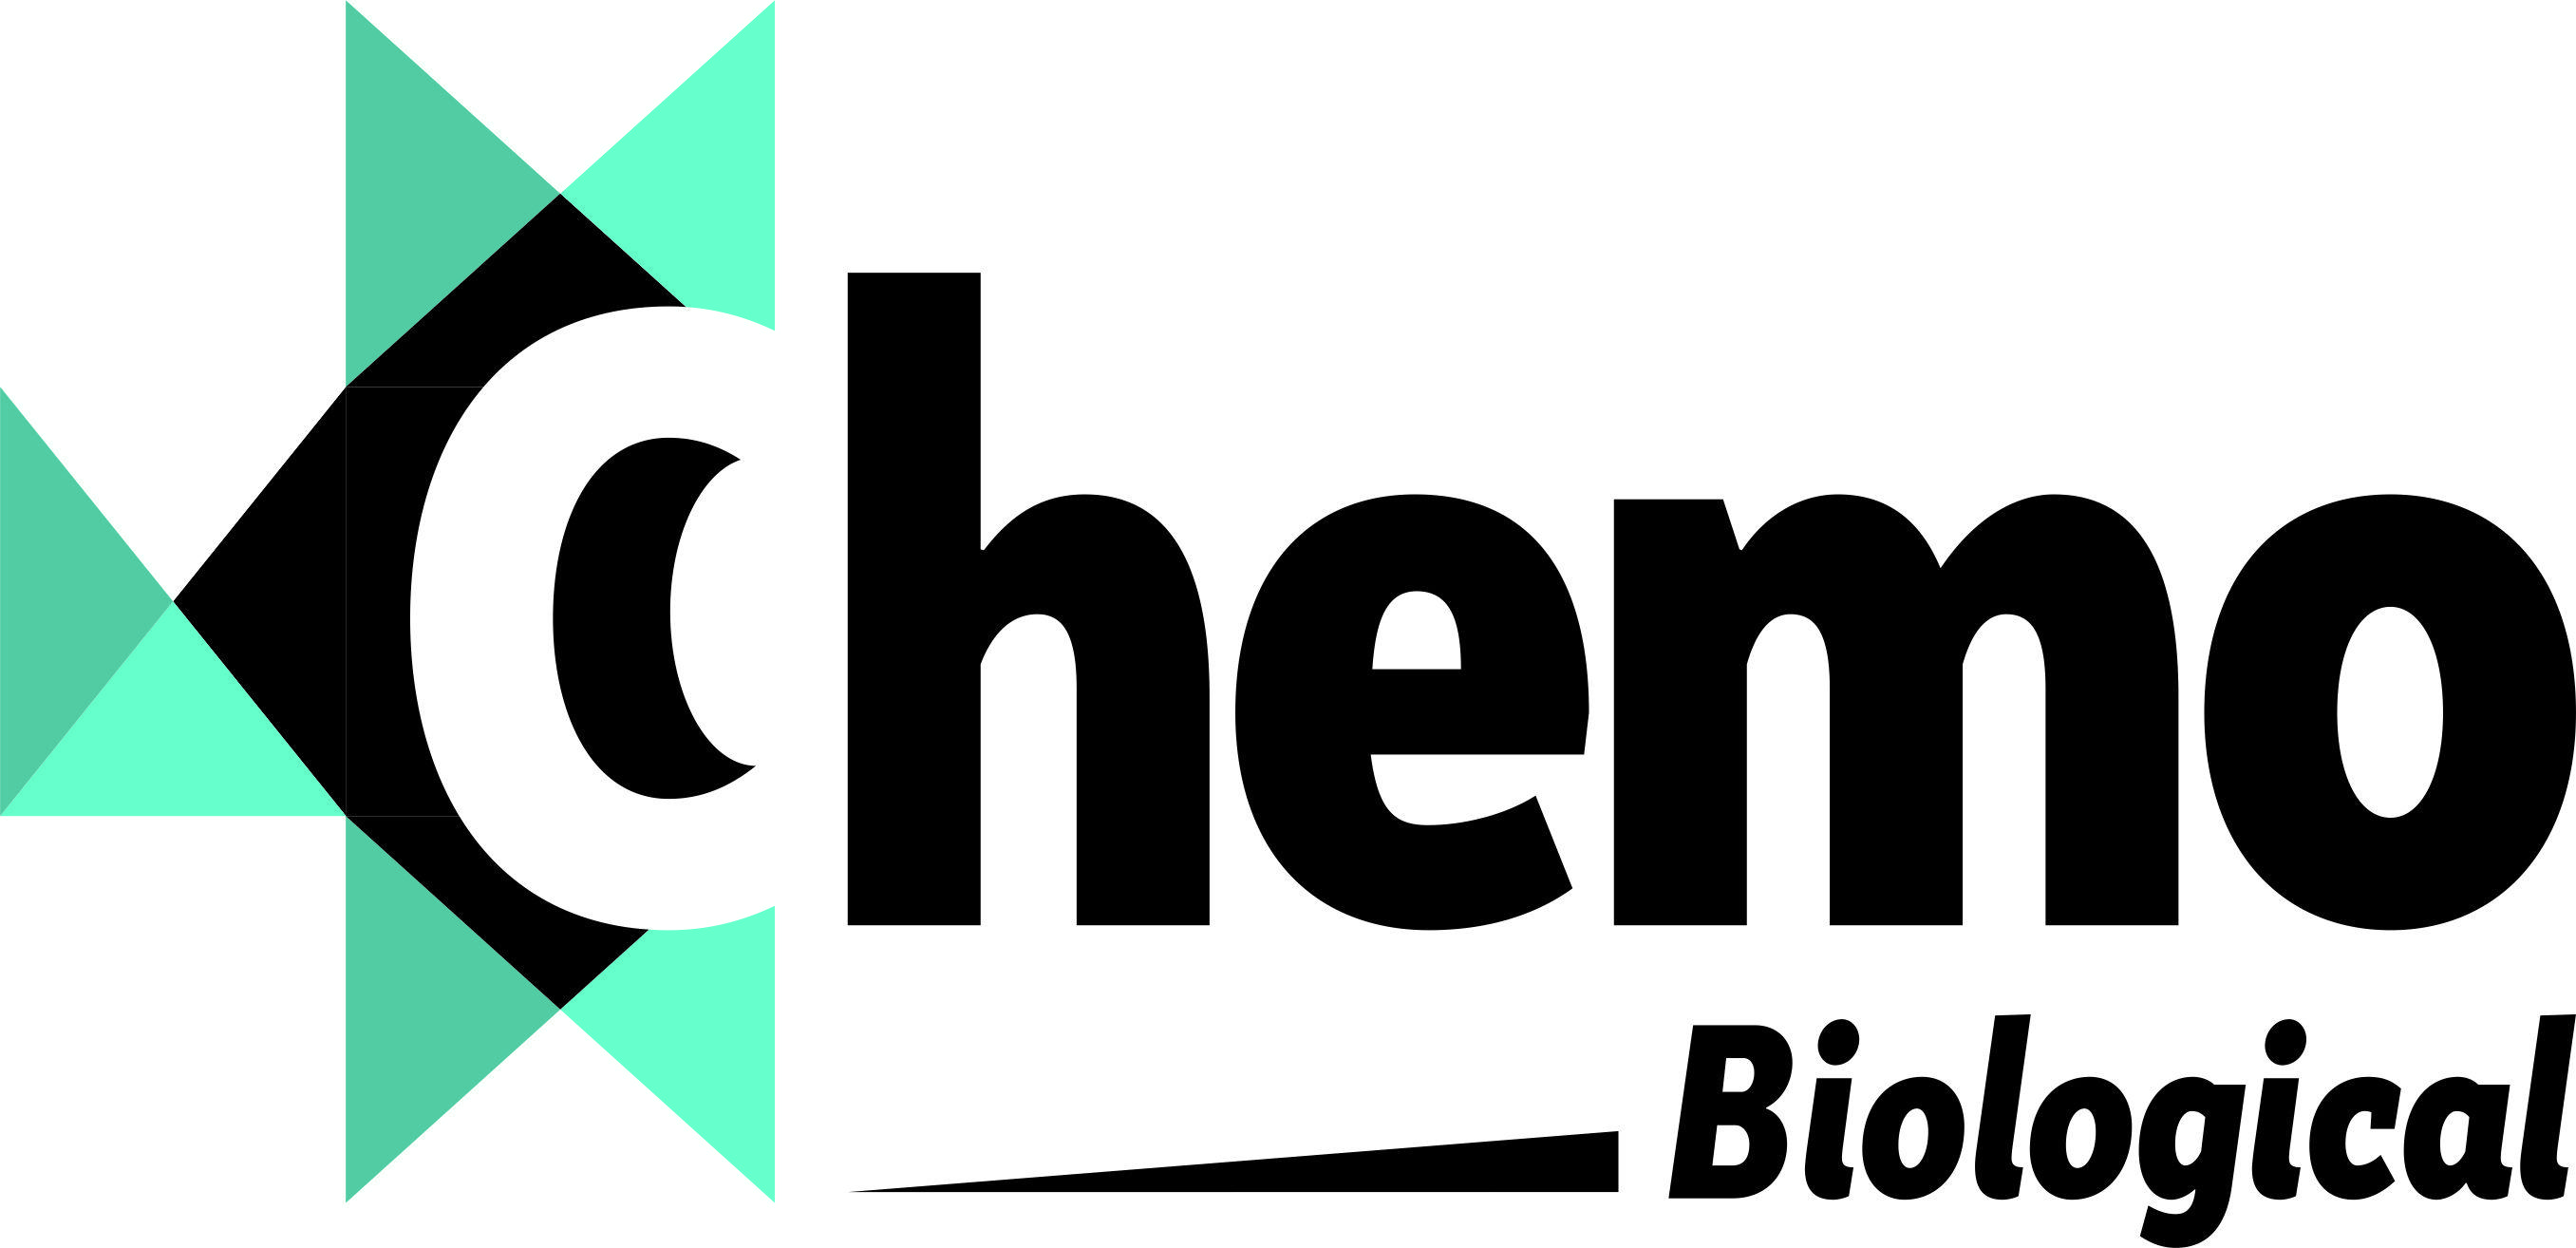 Chemo Logo - Chemo Biological in New Delhi, India